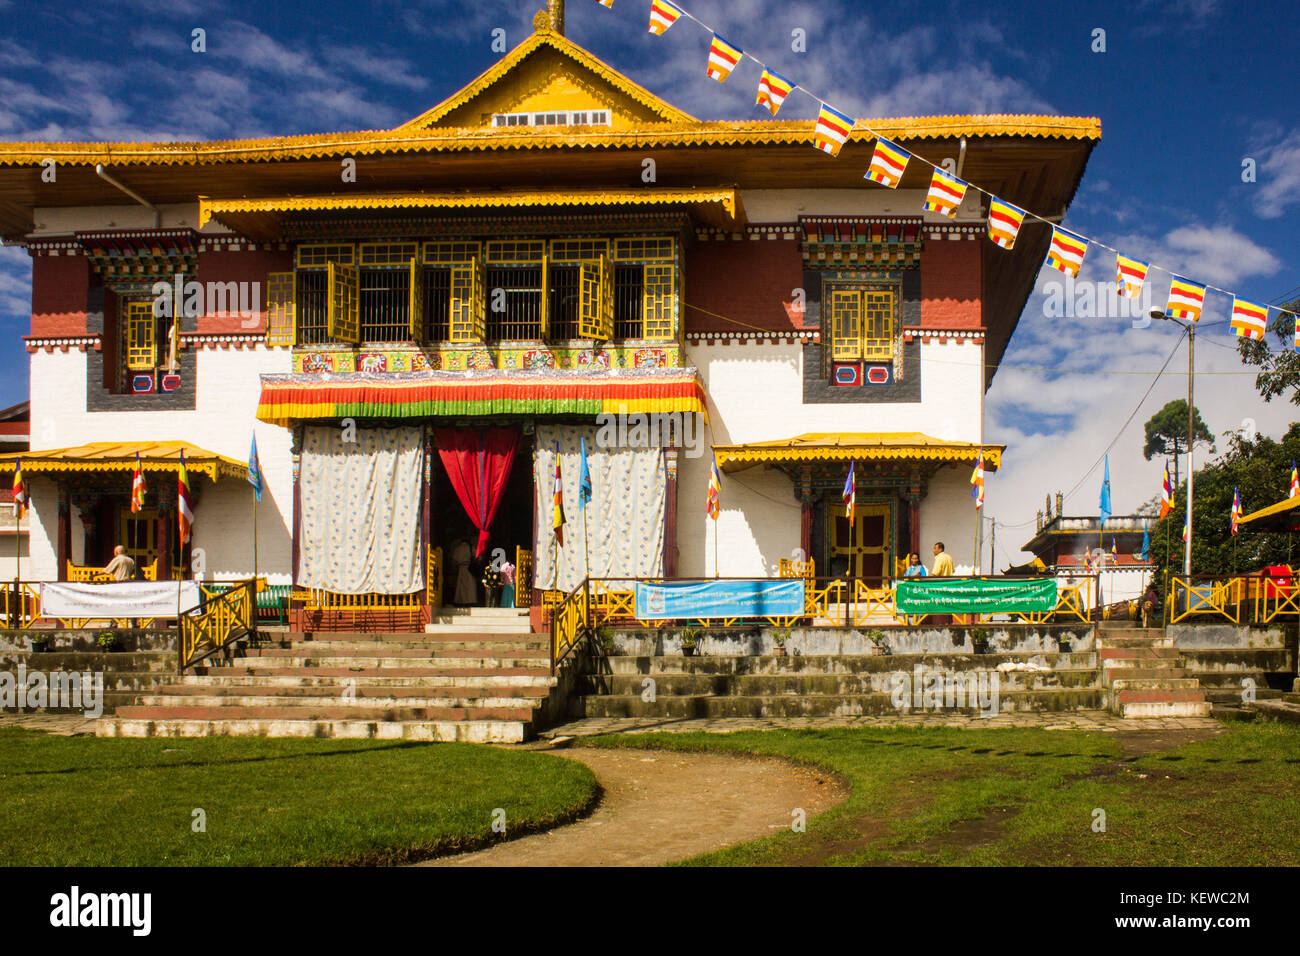 August 29, 2015 - Freundschaft, Harmonie, einem erhabenen Berg und eine zornvolle Gottheit''" Das sind die vier Dinge, die Pang lhabsol, ein jährliches Festival in Sikkim, über ist. Der friedlichen Hügel - Zustand war einmal zerrissen durch Streit und Feindschaft zwischen Die lepchas und bhutias (des tibetischen Ursprungs). Die Einheimischen glauben, dass Pang lhabsol erste gefeiert wurde irgendwann im 13. Jahrhundert der Anfang der friedlichen Beziehungen zwischen den kriegführenden Gruppen zu markieren. lepcha Chief thekongtek und tibetischen Kronprinz khya bumsa neun Platten errichtet an kabilunchok (in der Nähe von Gangtok, die Hauptstadt), gebunden Tierdärme aro Stockfoto